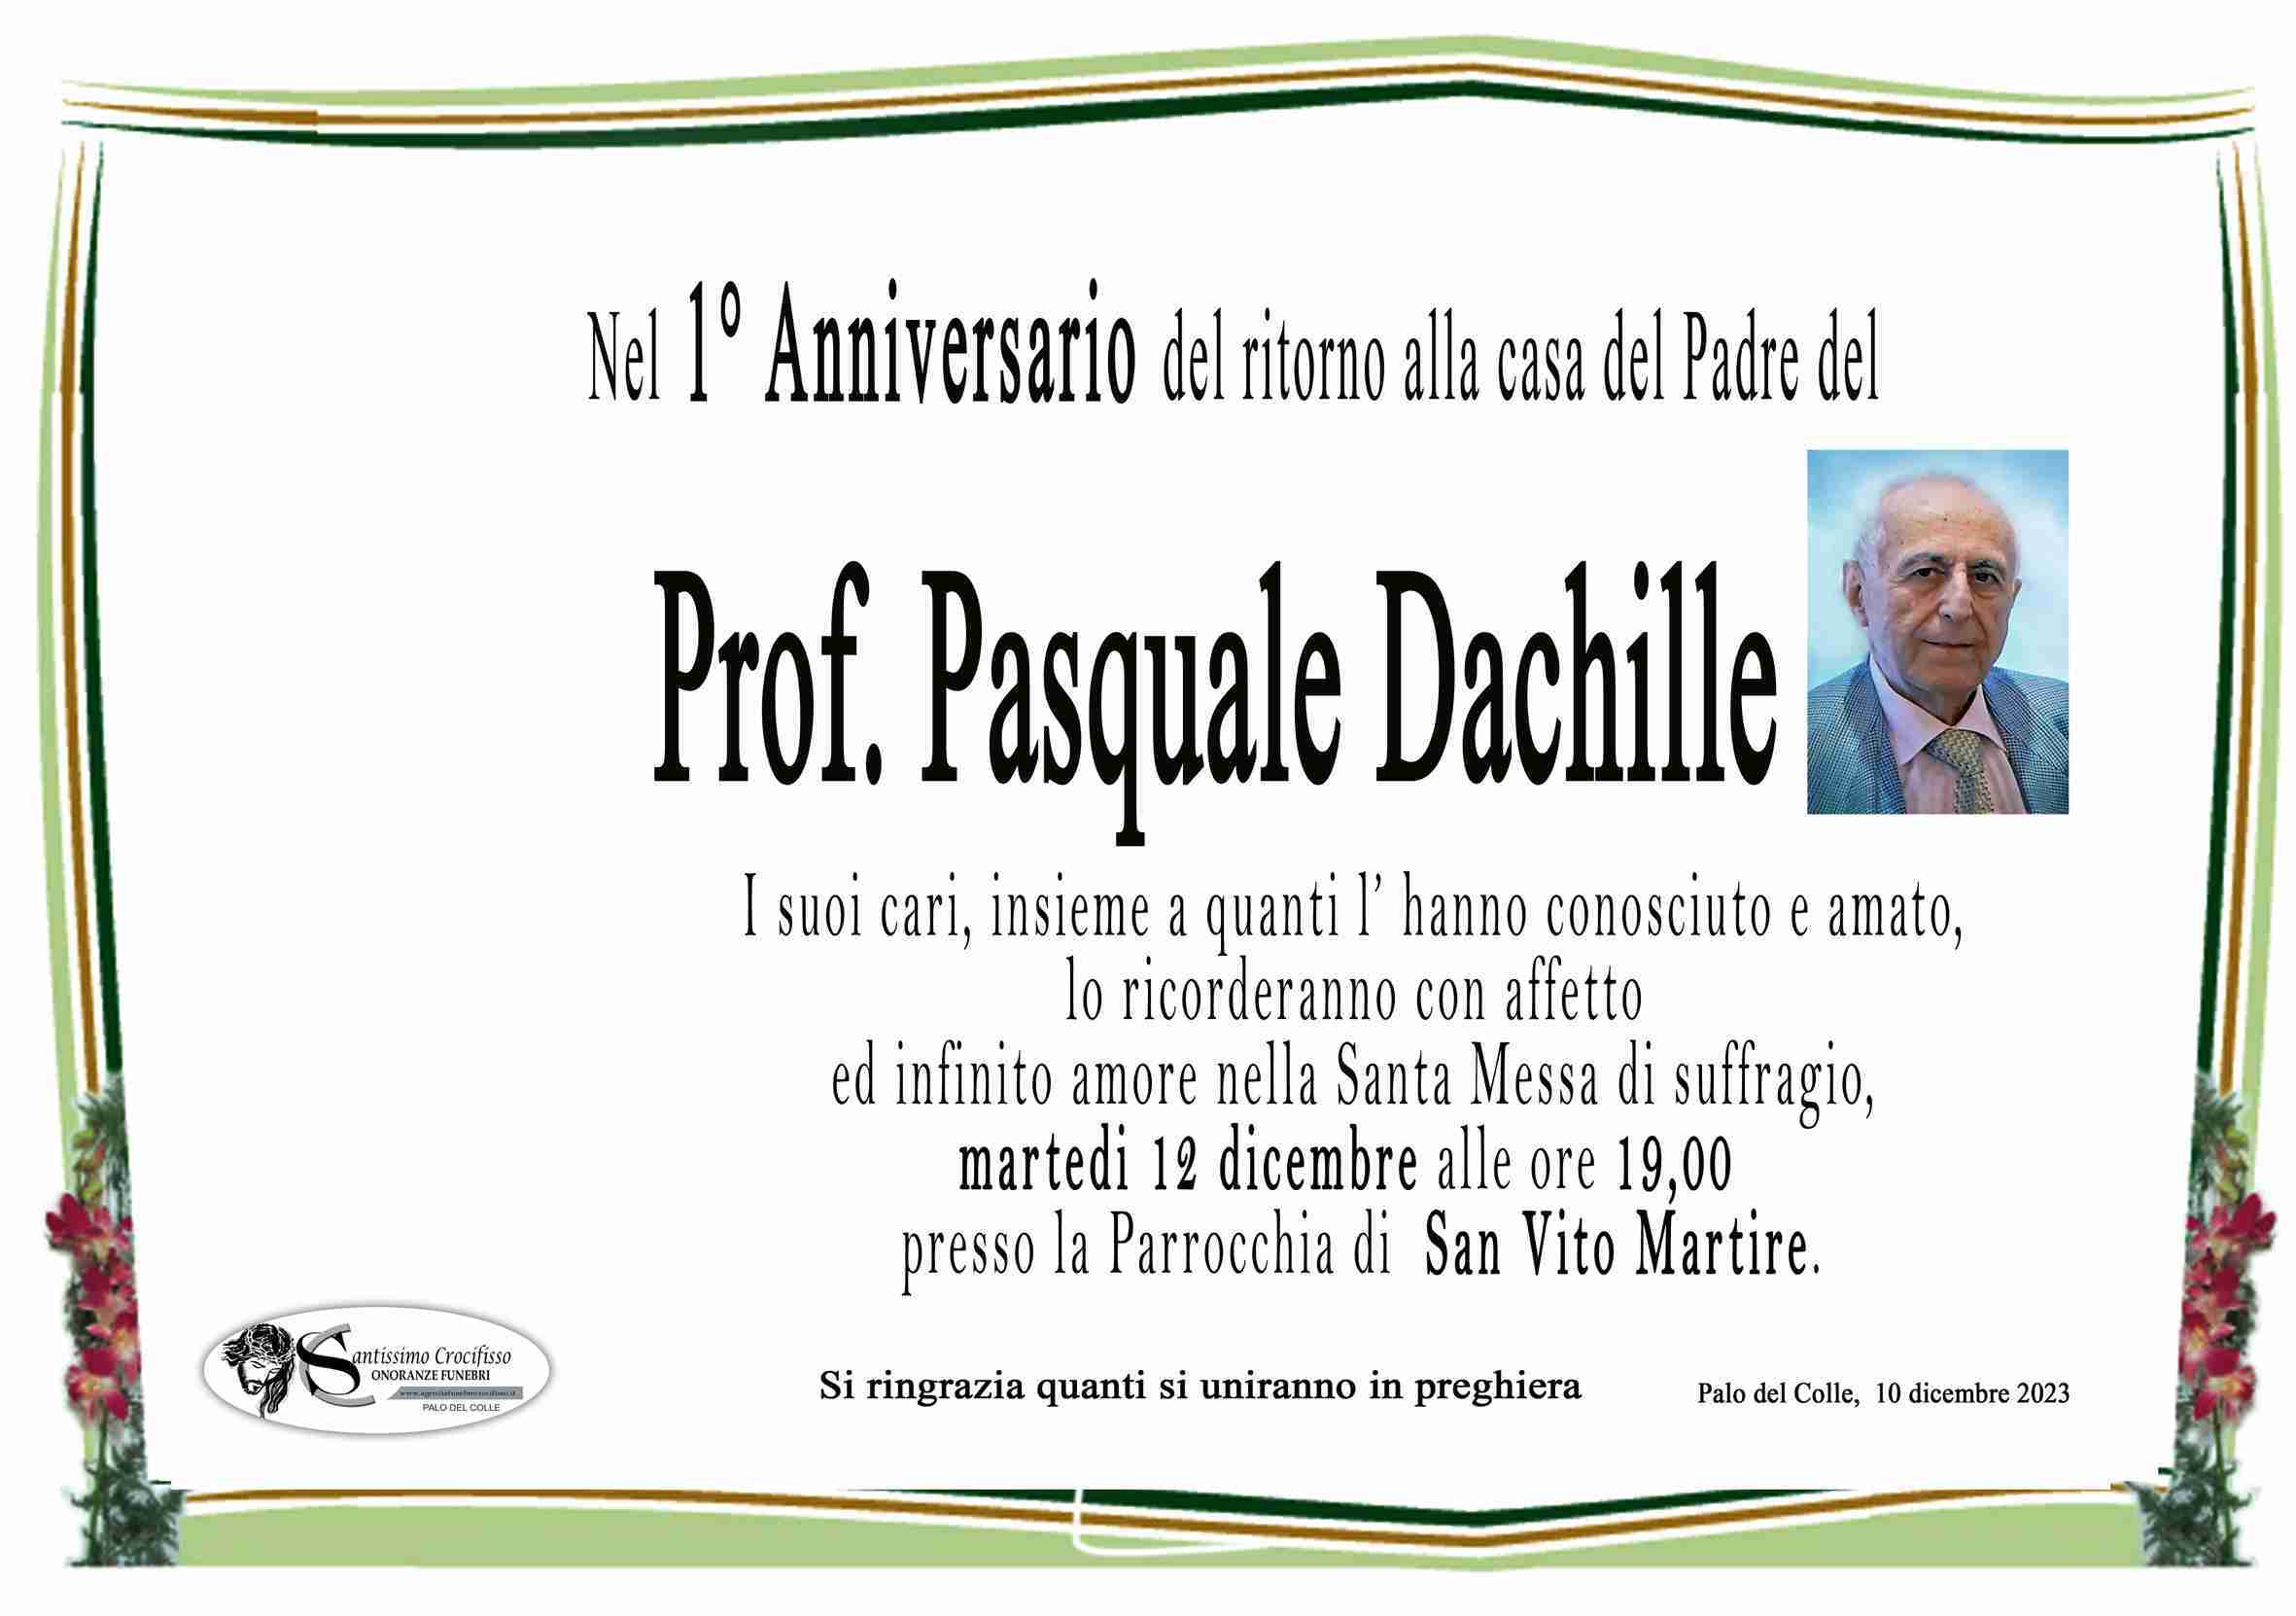 Pasquale Dachille